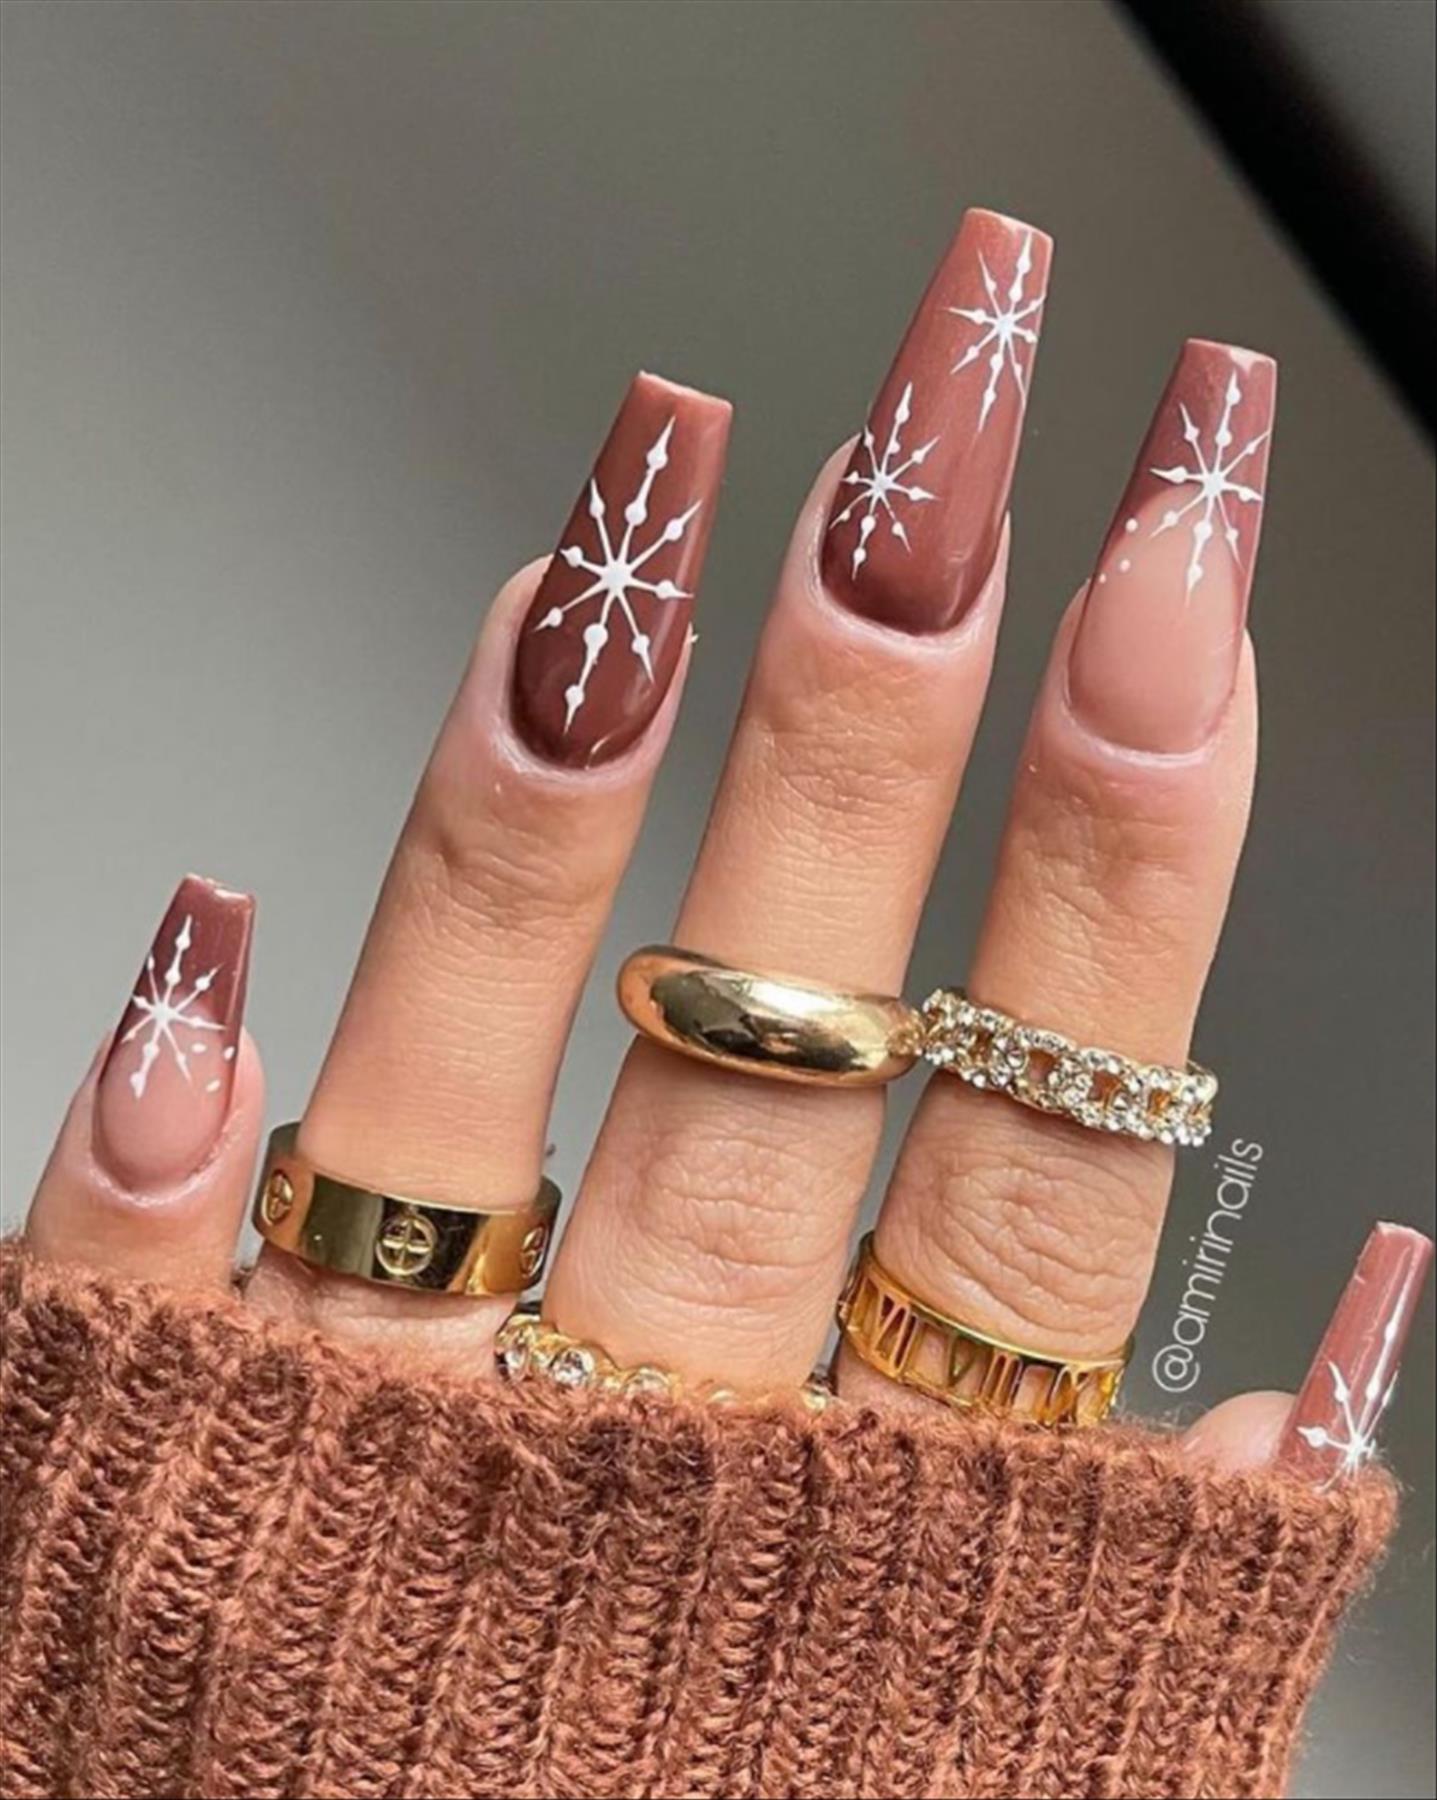 TOP 48 winter nail art for holiday nail ideas 